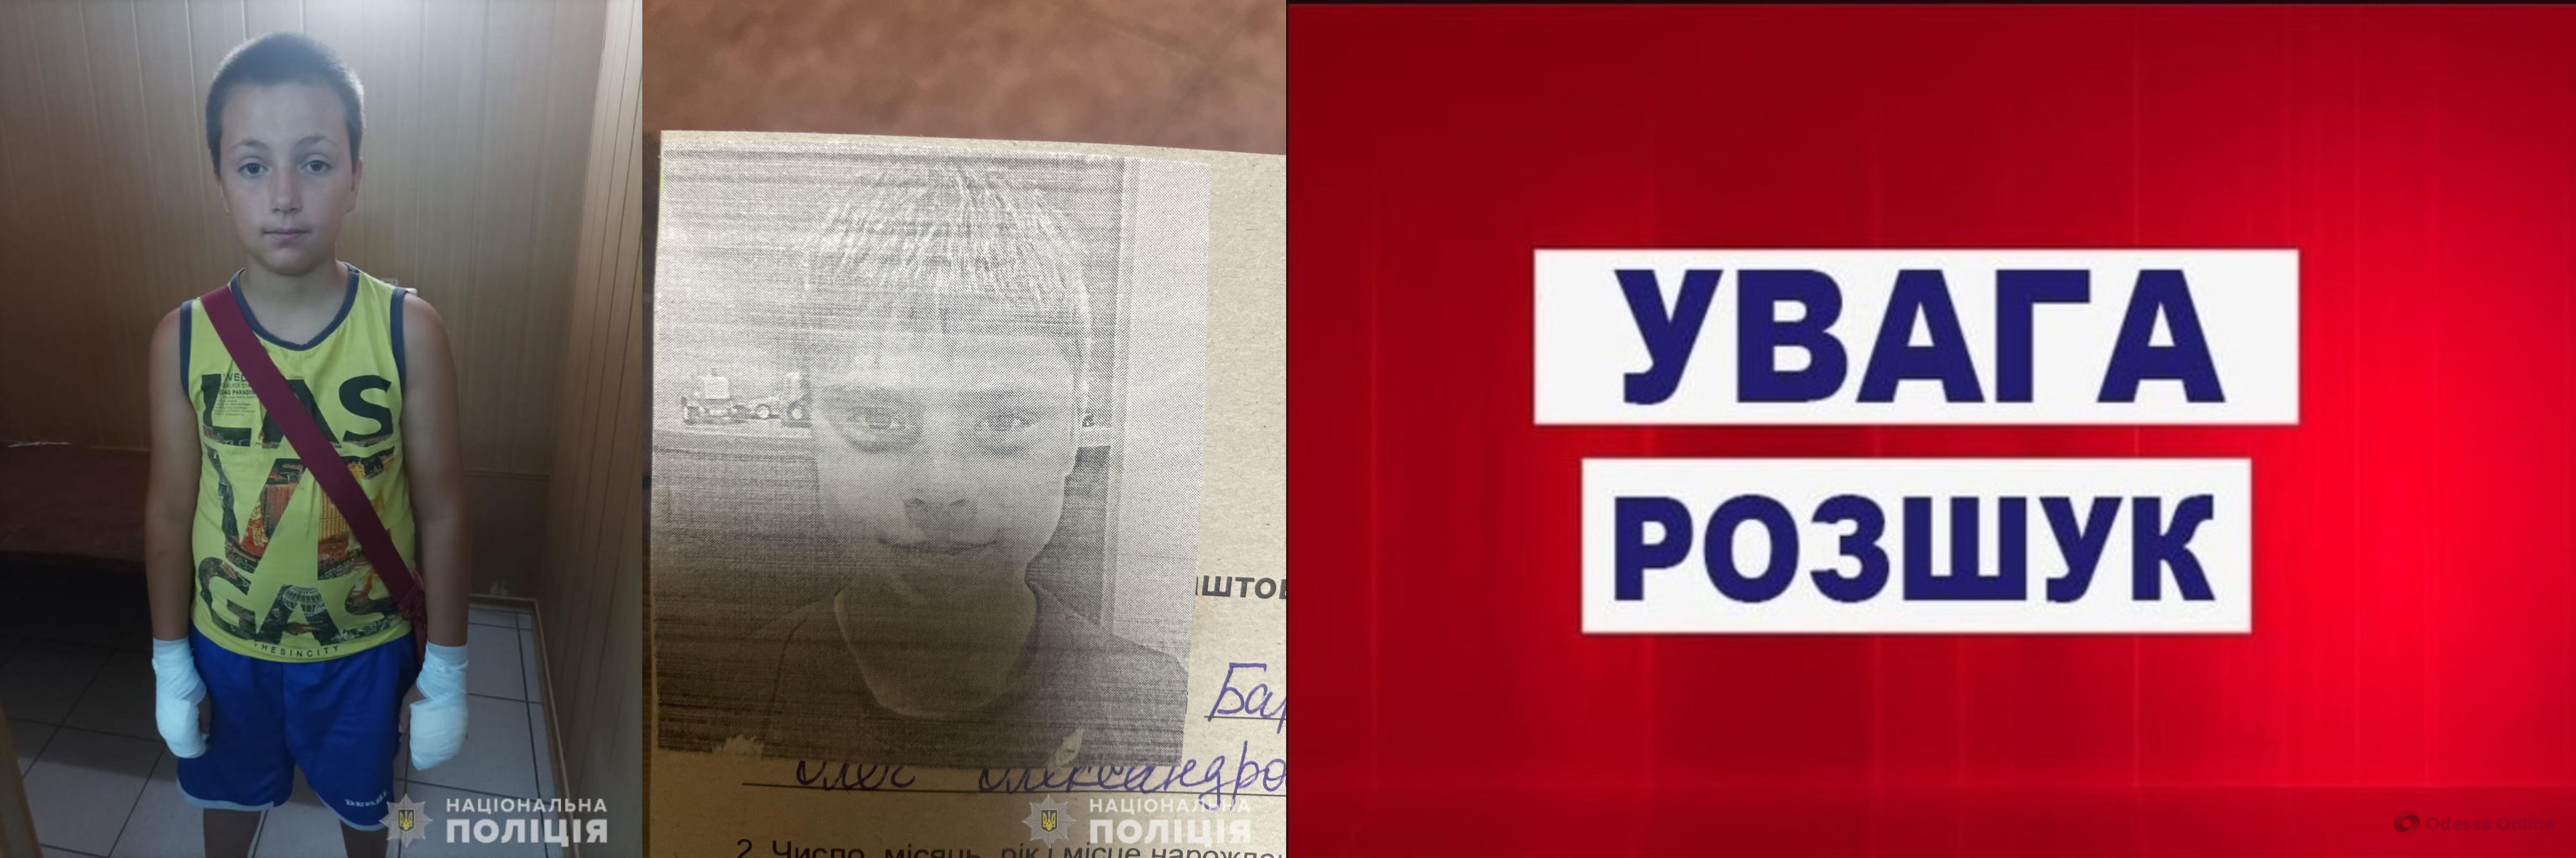 Одеська поліція розшукує двох неповнолітніх хлопців, які зникли безвісти (оновлено)